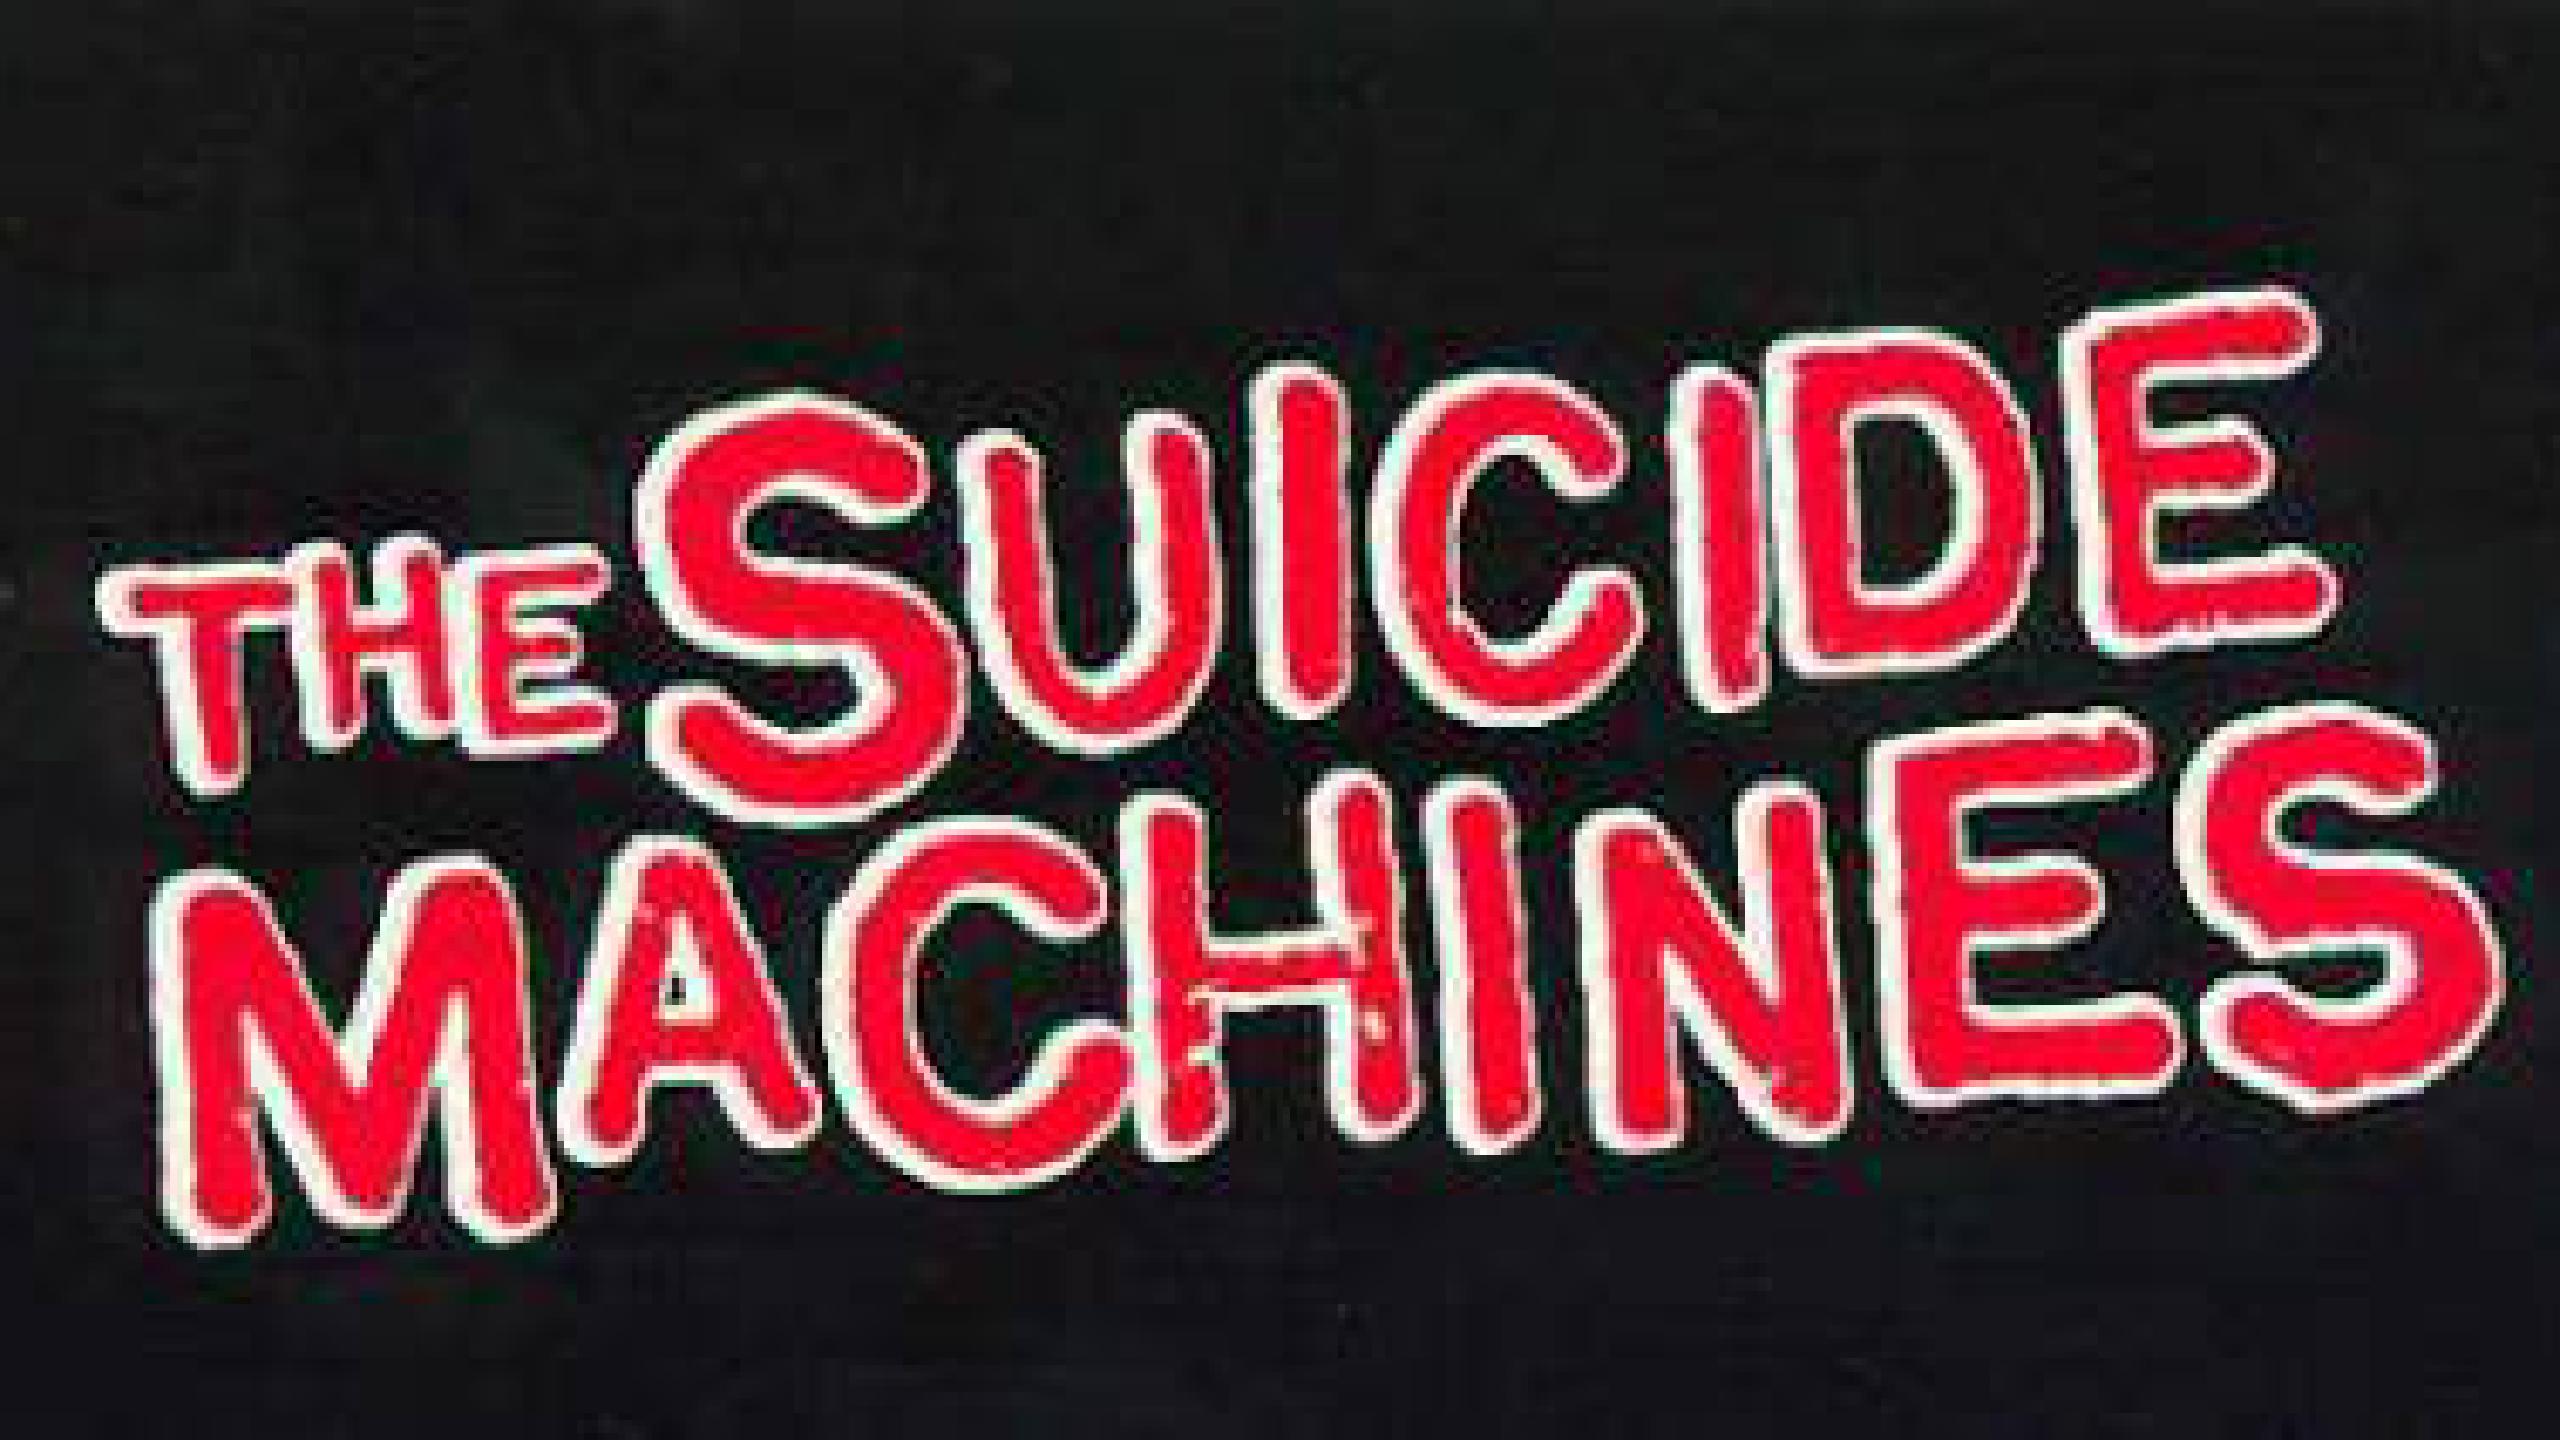 suicide machines tour 2023